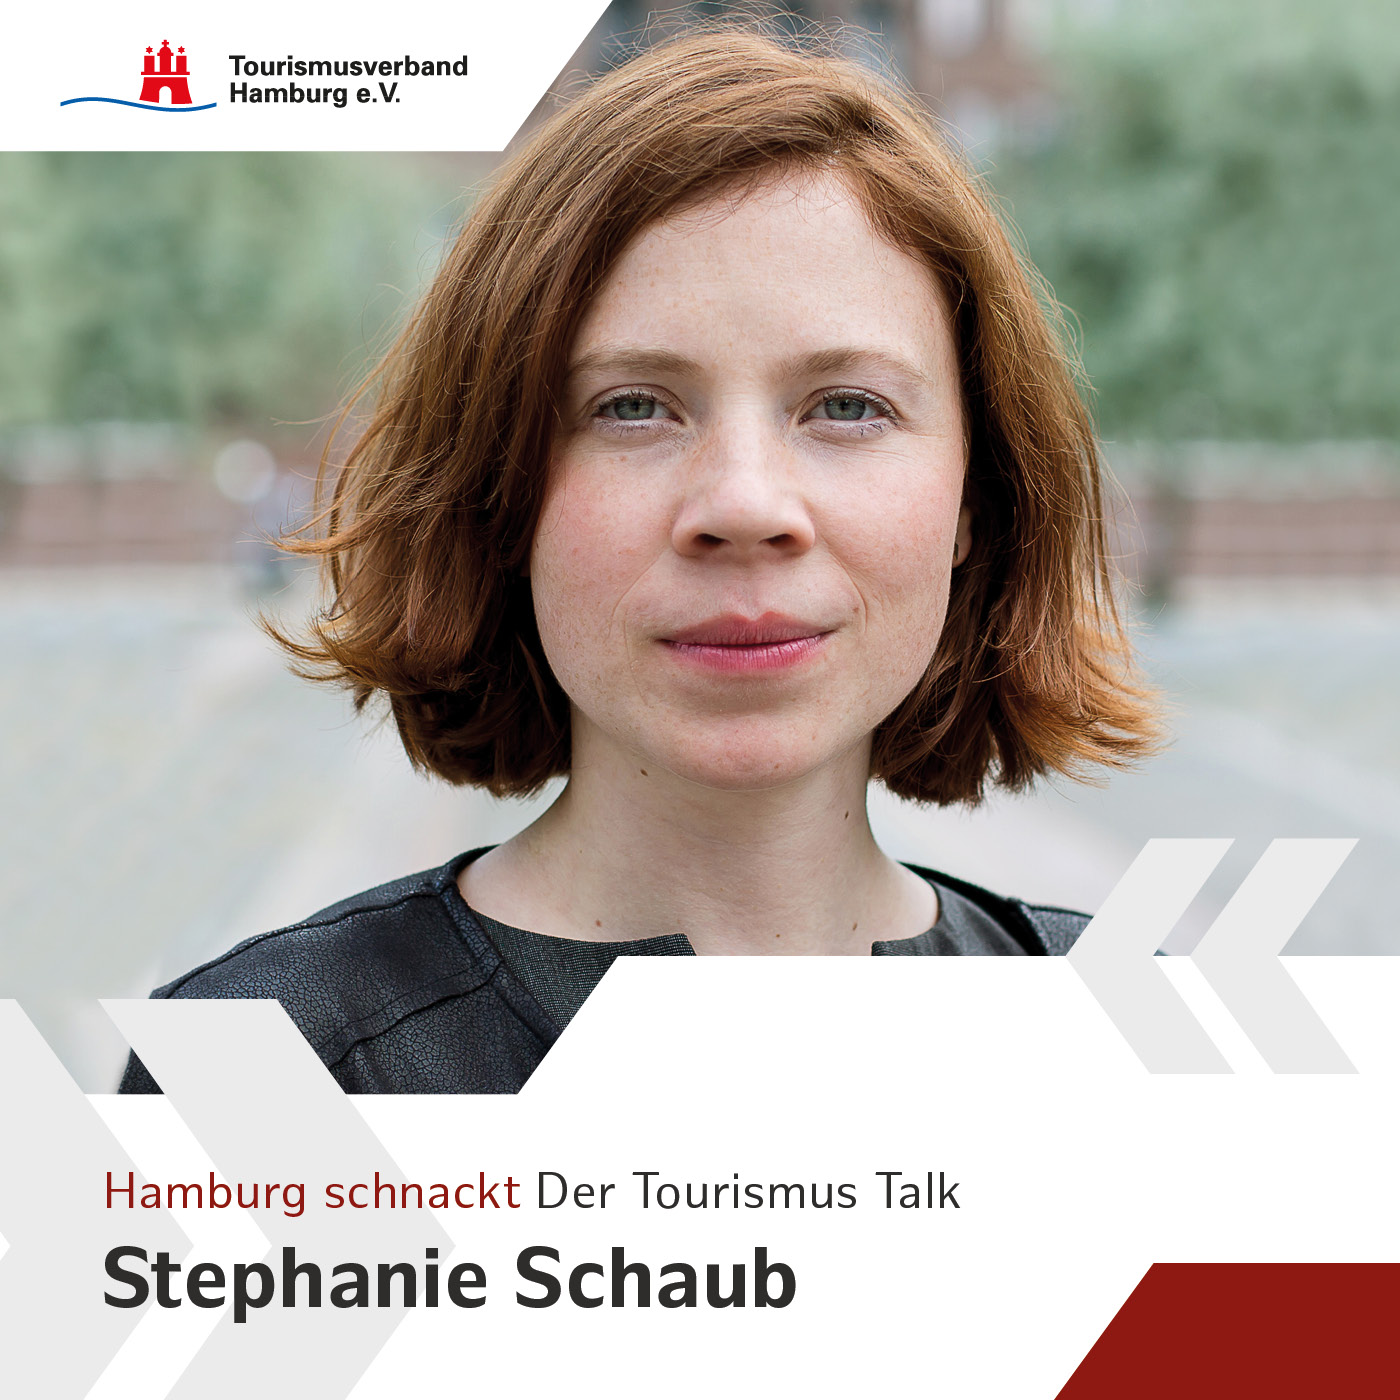 Hamburg schnackt mit Stephanie Schaub